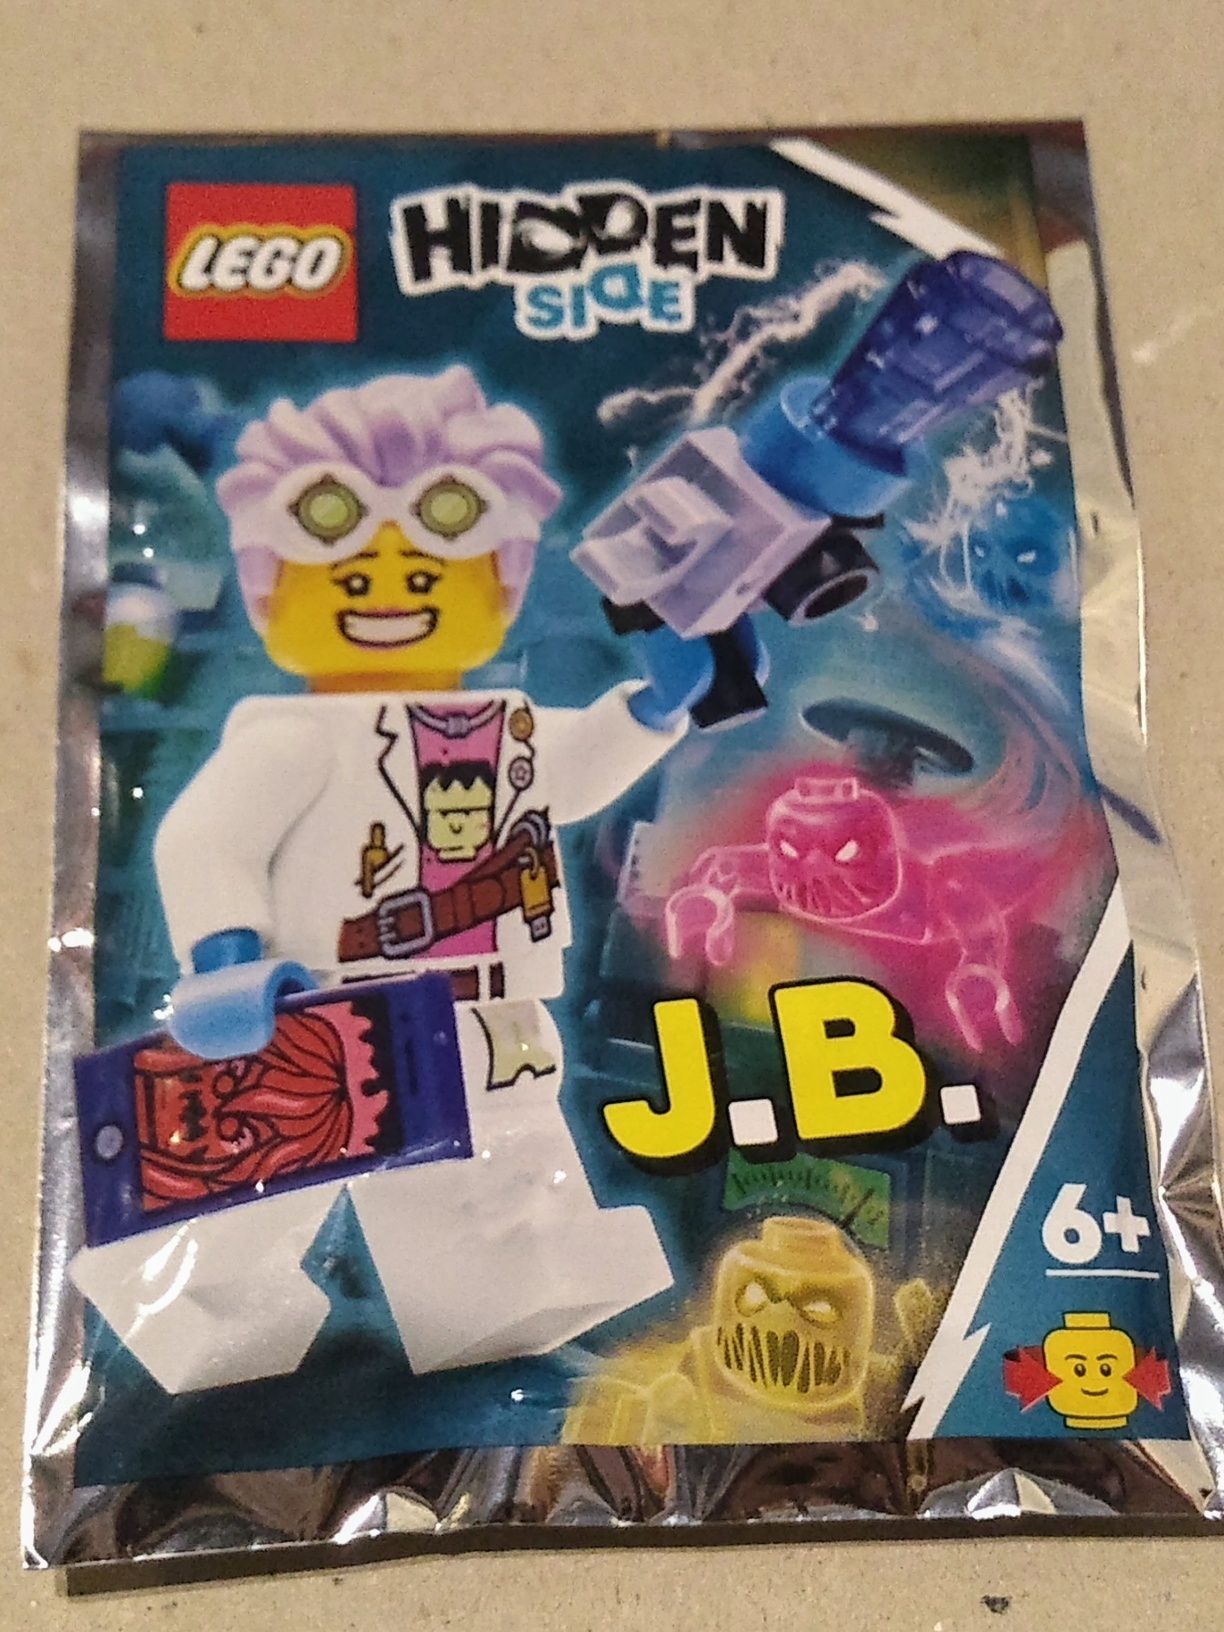 Figurka LEGO hidden side J.B.